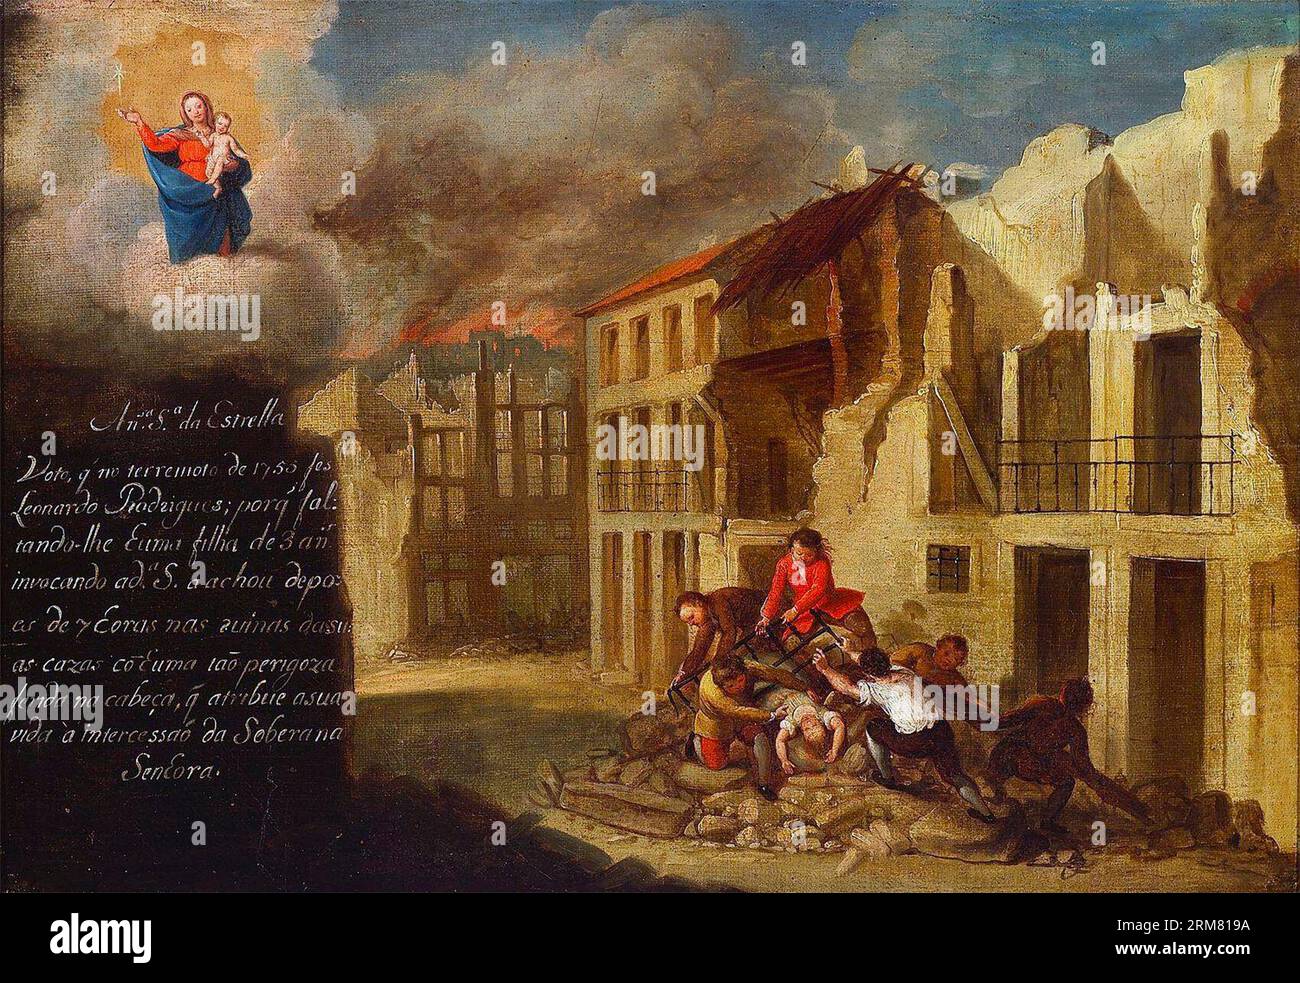 Un ex-voto contemporain représente le sauvetage d'un enfant de trois ans sous la maçonnerie tombée, sous le regard vigilant de notre-Dame de l'étoile un ex-voto de notre-Dame de l'étoile, représentant des scènes du tremblement de terre de Lisbonne de 1755. Banque D'Images